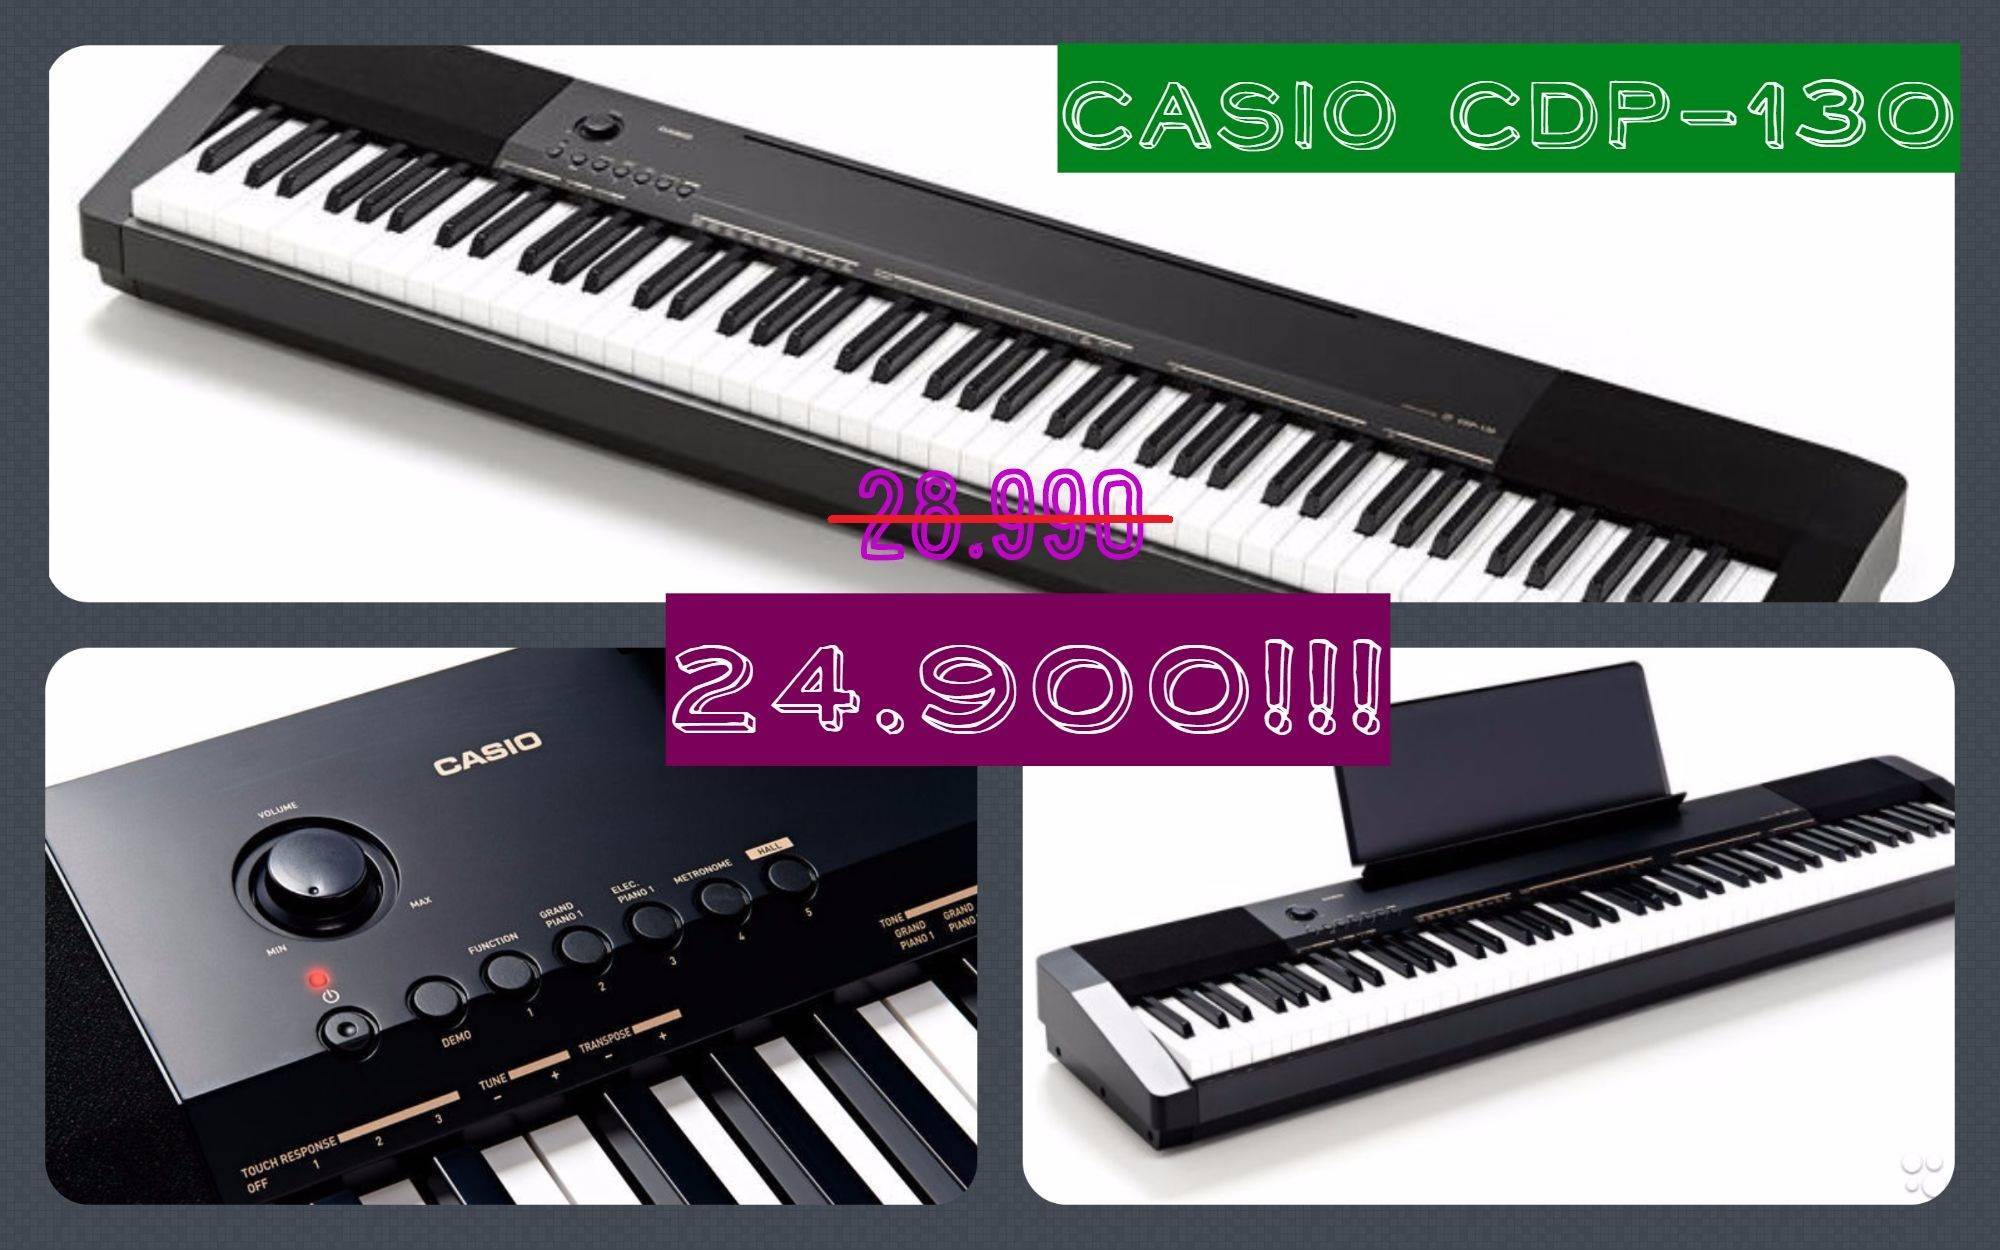 Акция на Casio CDP-130 в магазине B&W Music!